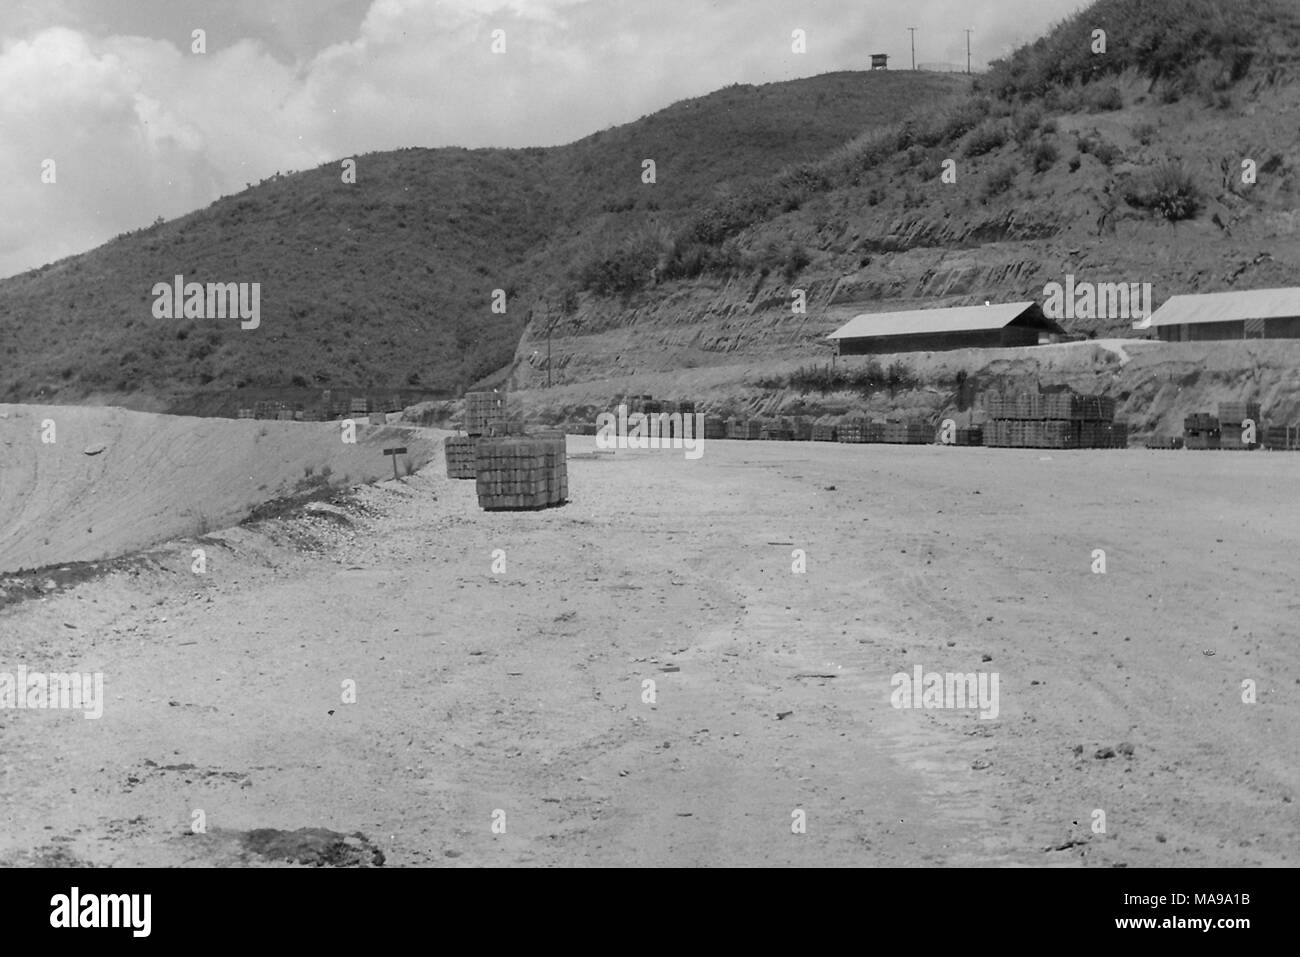 Photographie noir et blanc montrant une vue de fournitures empilés dans un paysage de sable, avec des casernes à droite et un poste d'observation sur une colline dans l'arrière-plan, photographié au Vietnam pendant la guerre du Vietnam, 1971. () Banque D'Images